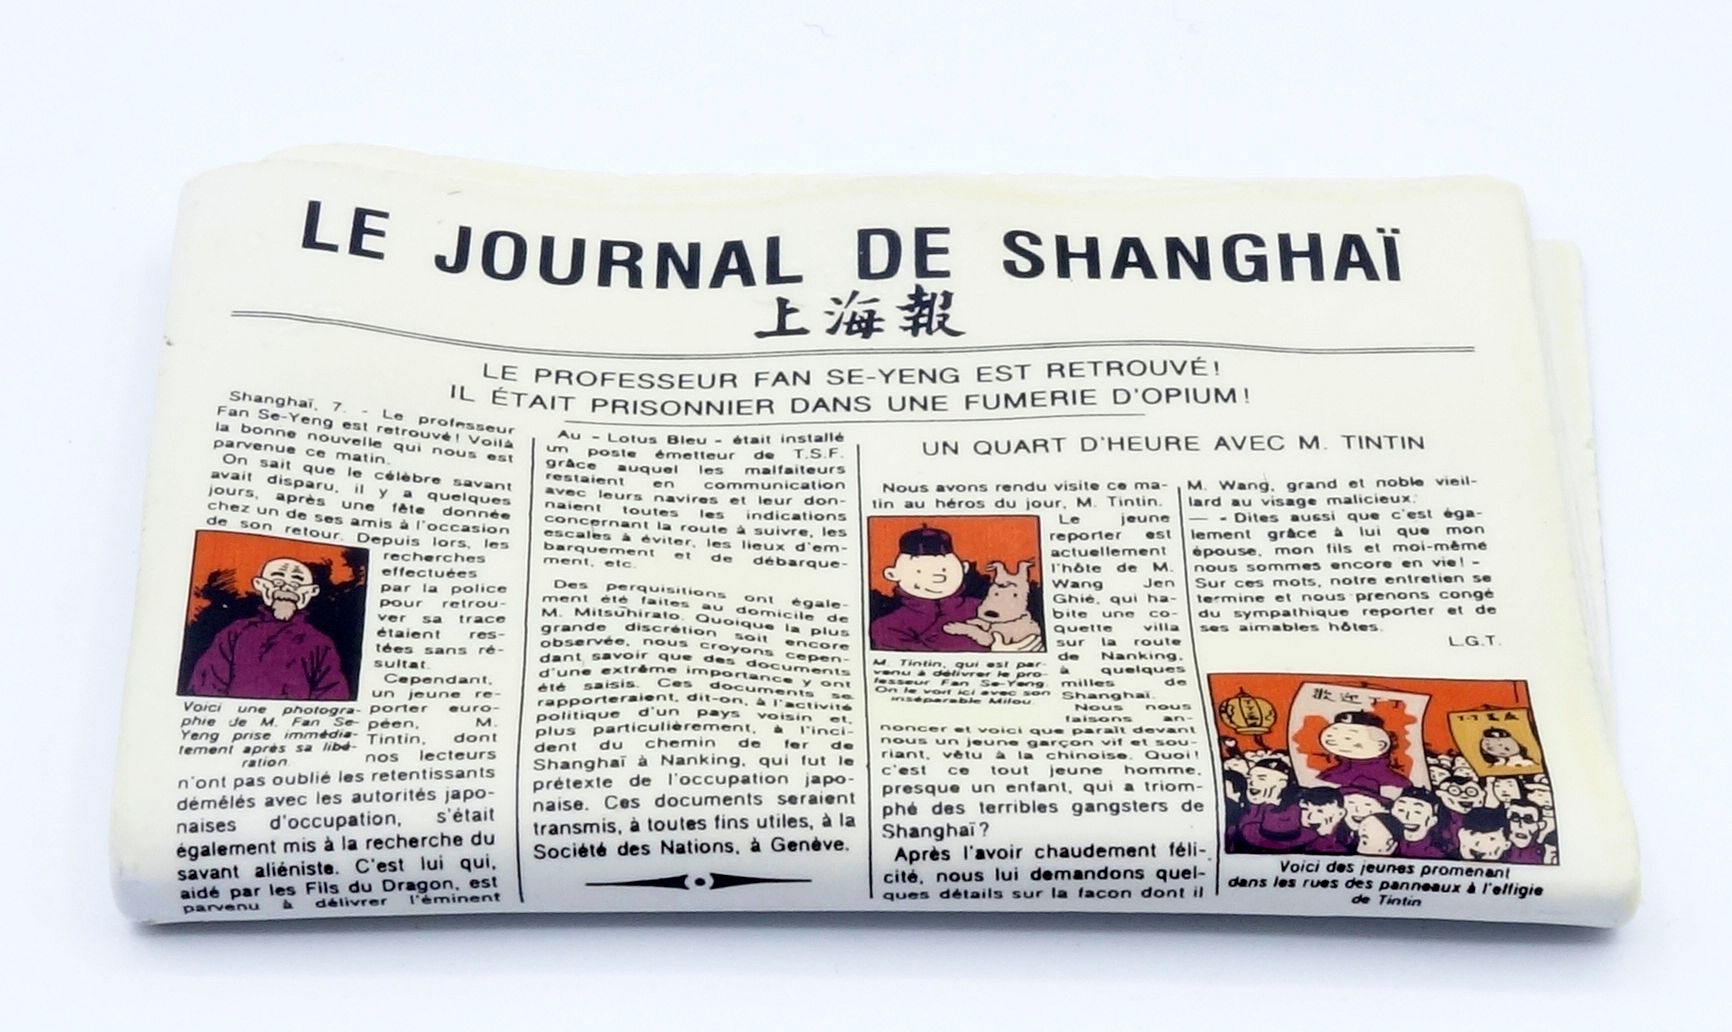 HERGÉ 
PIXI：丁丁，神话的对象。5613上海日报》，1995年，2000份，6厘米，BC。